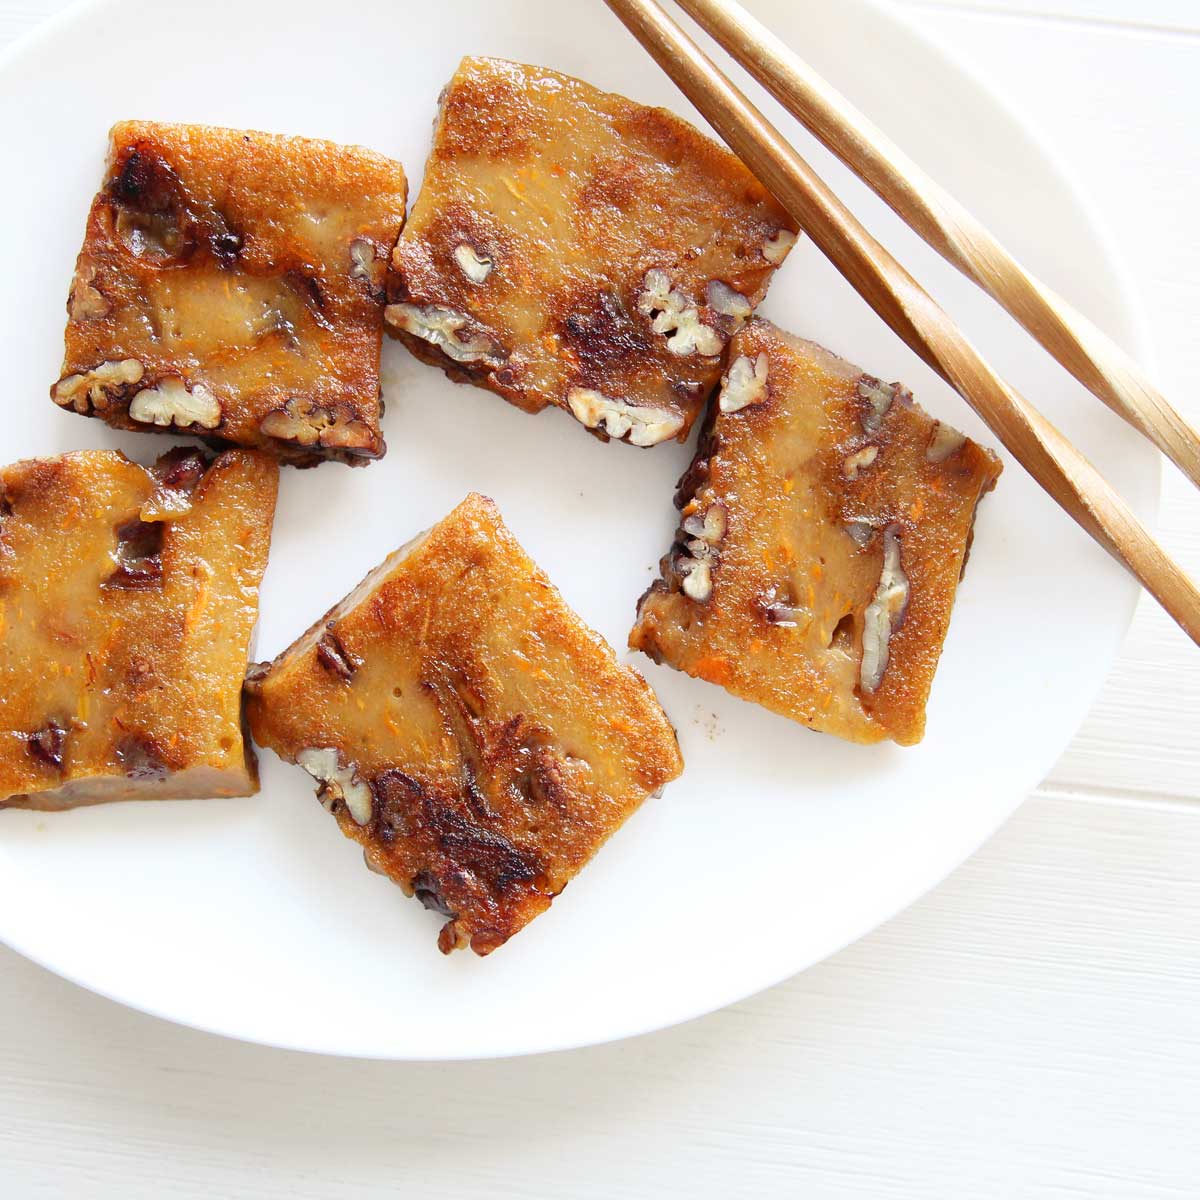 Healthy Sweet Potato Nian Gao (Mochi Cake) Recipe - Peanut Butter Mochi Cake